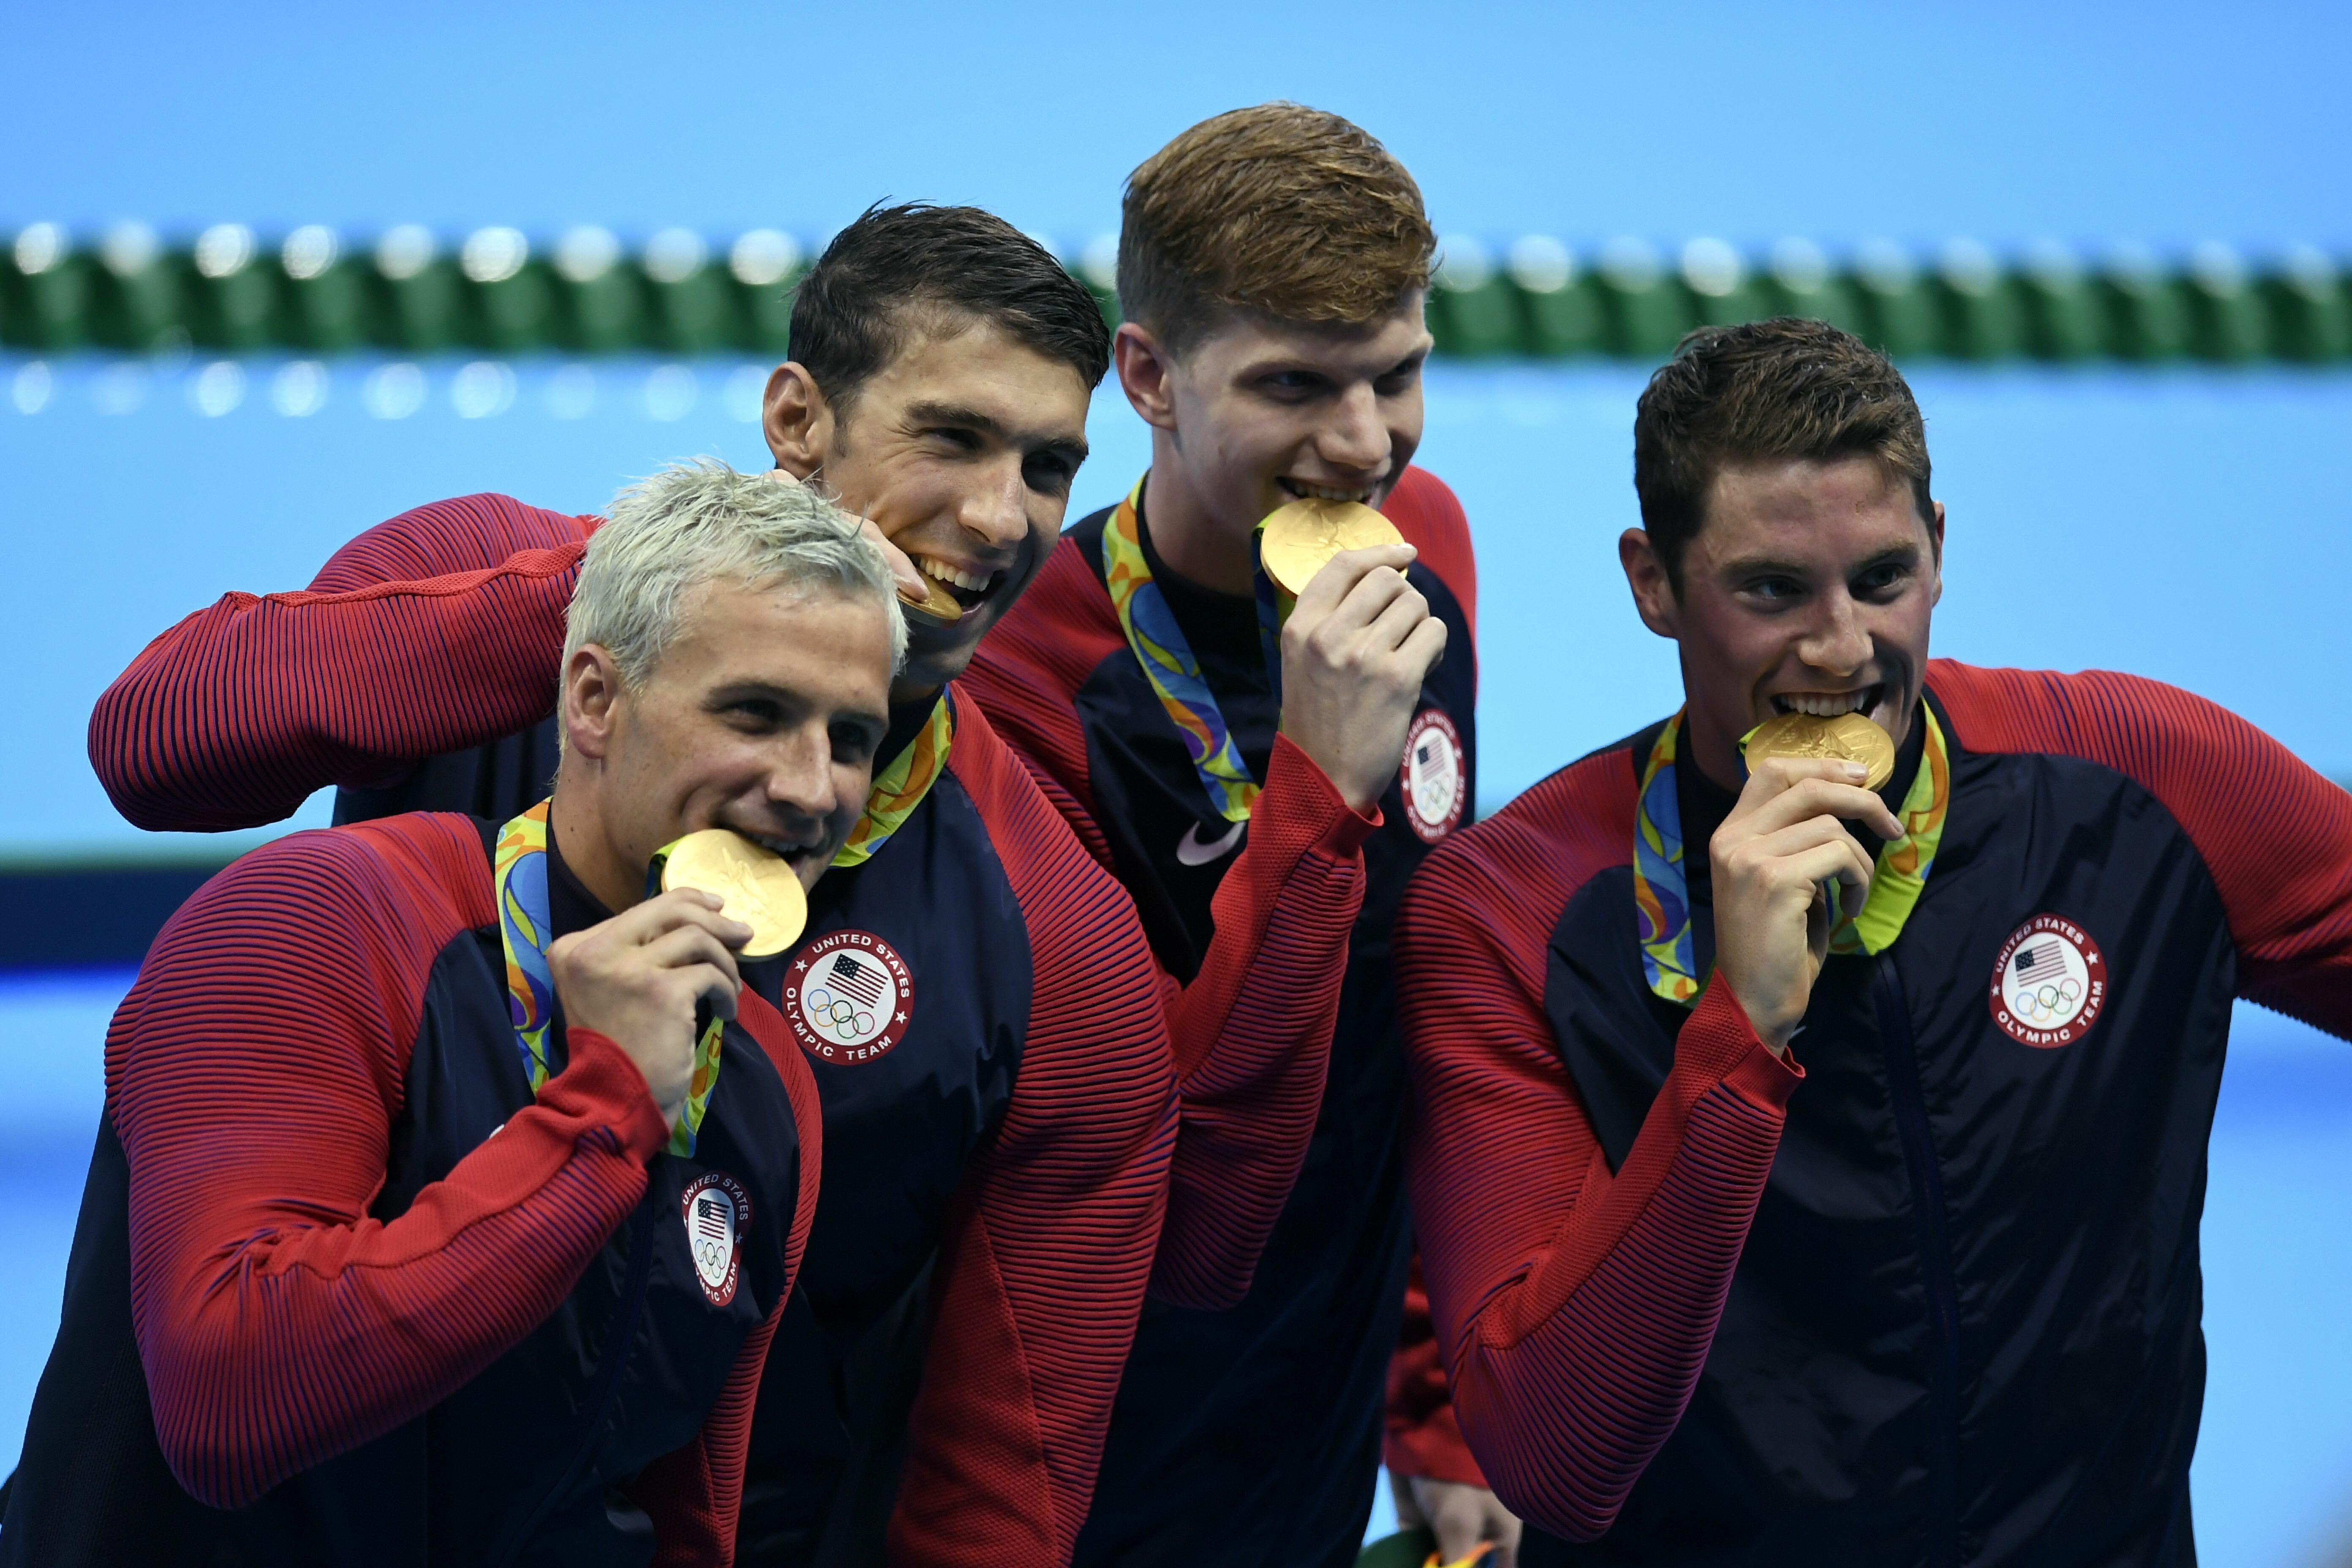 Спортсменов призывают. Пловец из Бразилии на Олимпиаде в Рио. Узнайте по фото олимпийского чемпиона Рио-де-Жанейро.